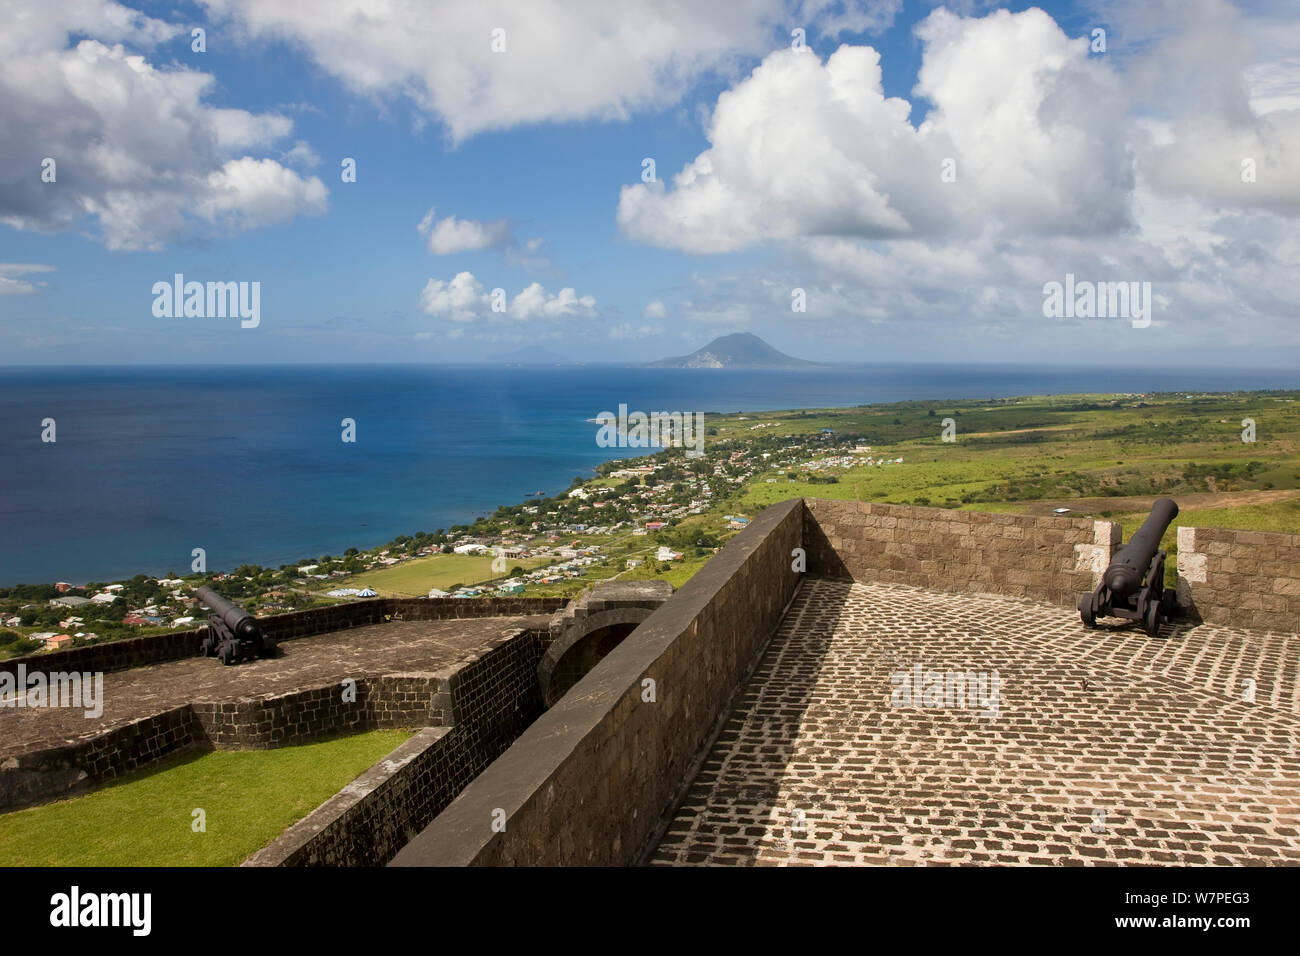 Vista in elevazione di Brimstone Hill Fortress che è situato a 790 metri sopra il livello del mare guardando verso St. Eustatius Island e il Mar dei Caraibi, il Parco Nazionale di Brimstone Hill Fortress è un sito Patrimonio Mondiale dell'UNESCO, St Kitts, St Kitts e Nevis, Isole Sottovento, Piccole Antille, Caraibi, West Indies 2008 Foto Stock